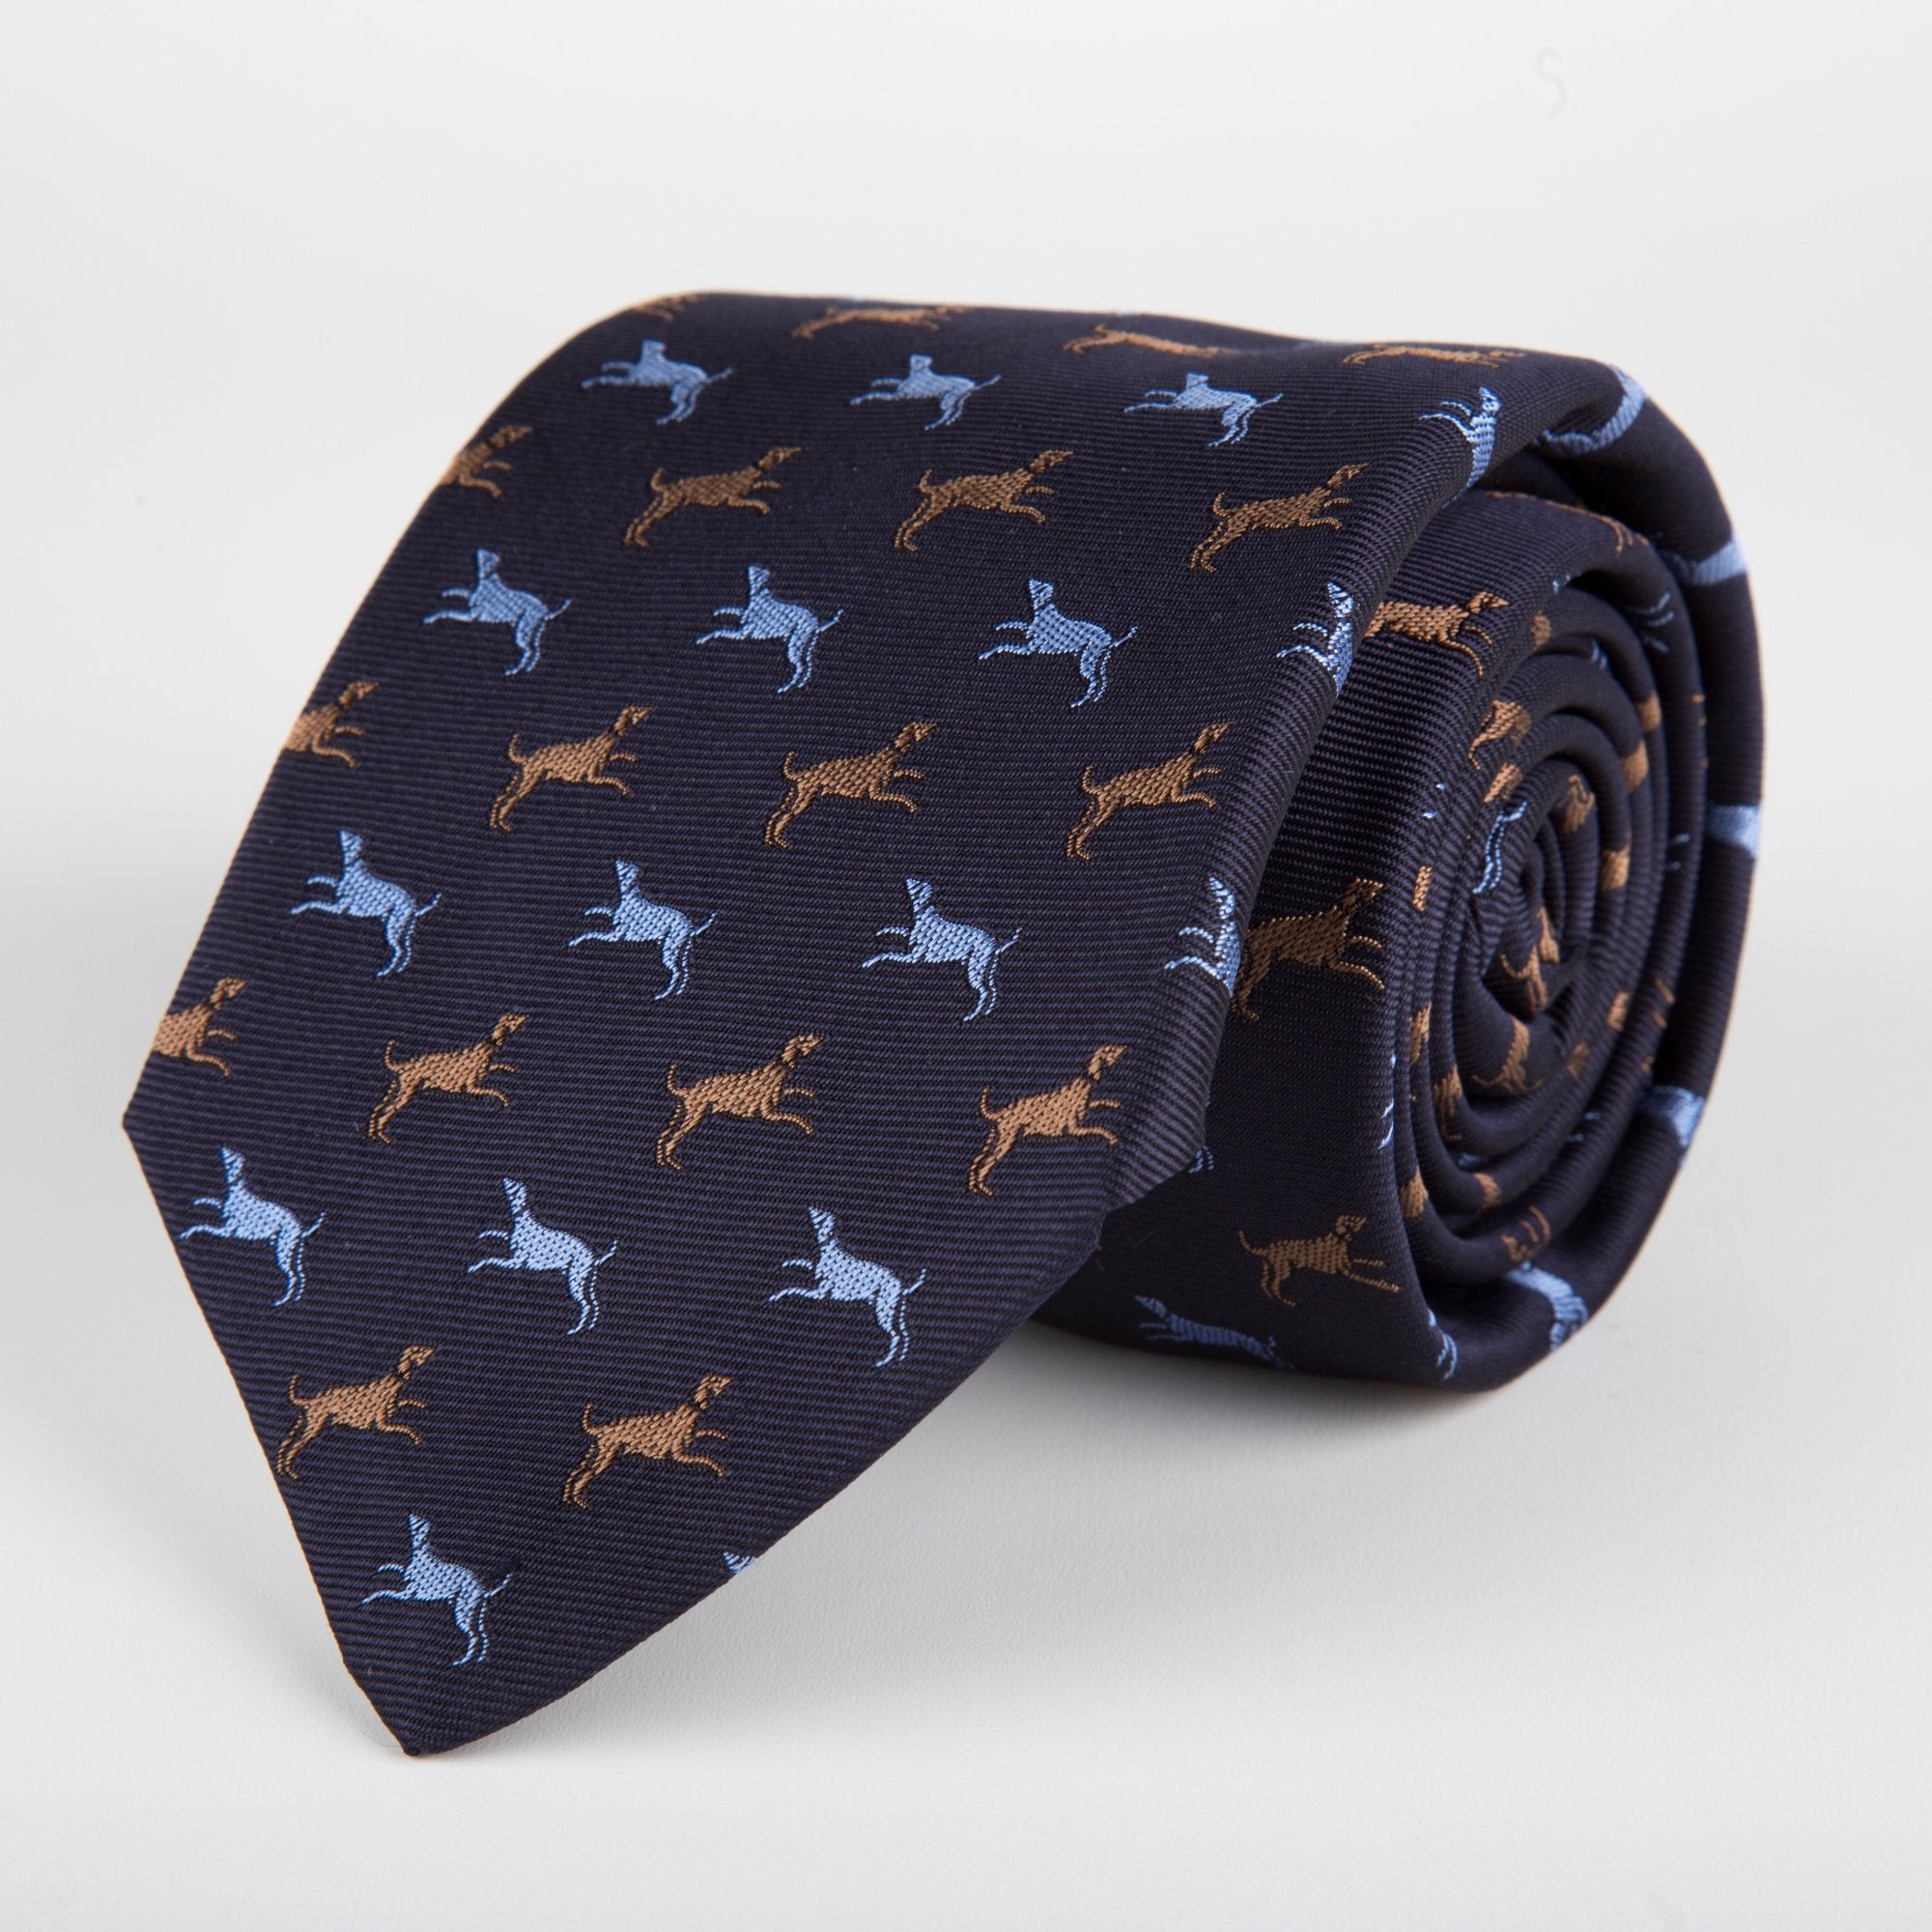 Blue Dog Motif Woven Silk Tie - British Made